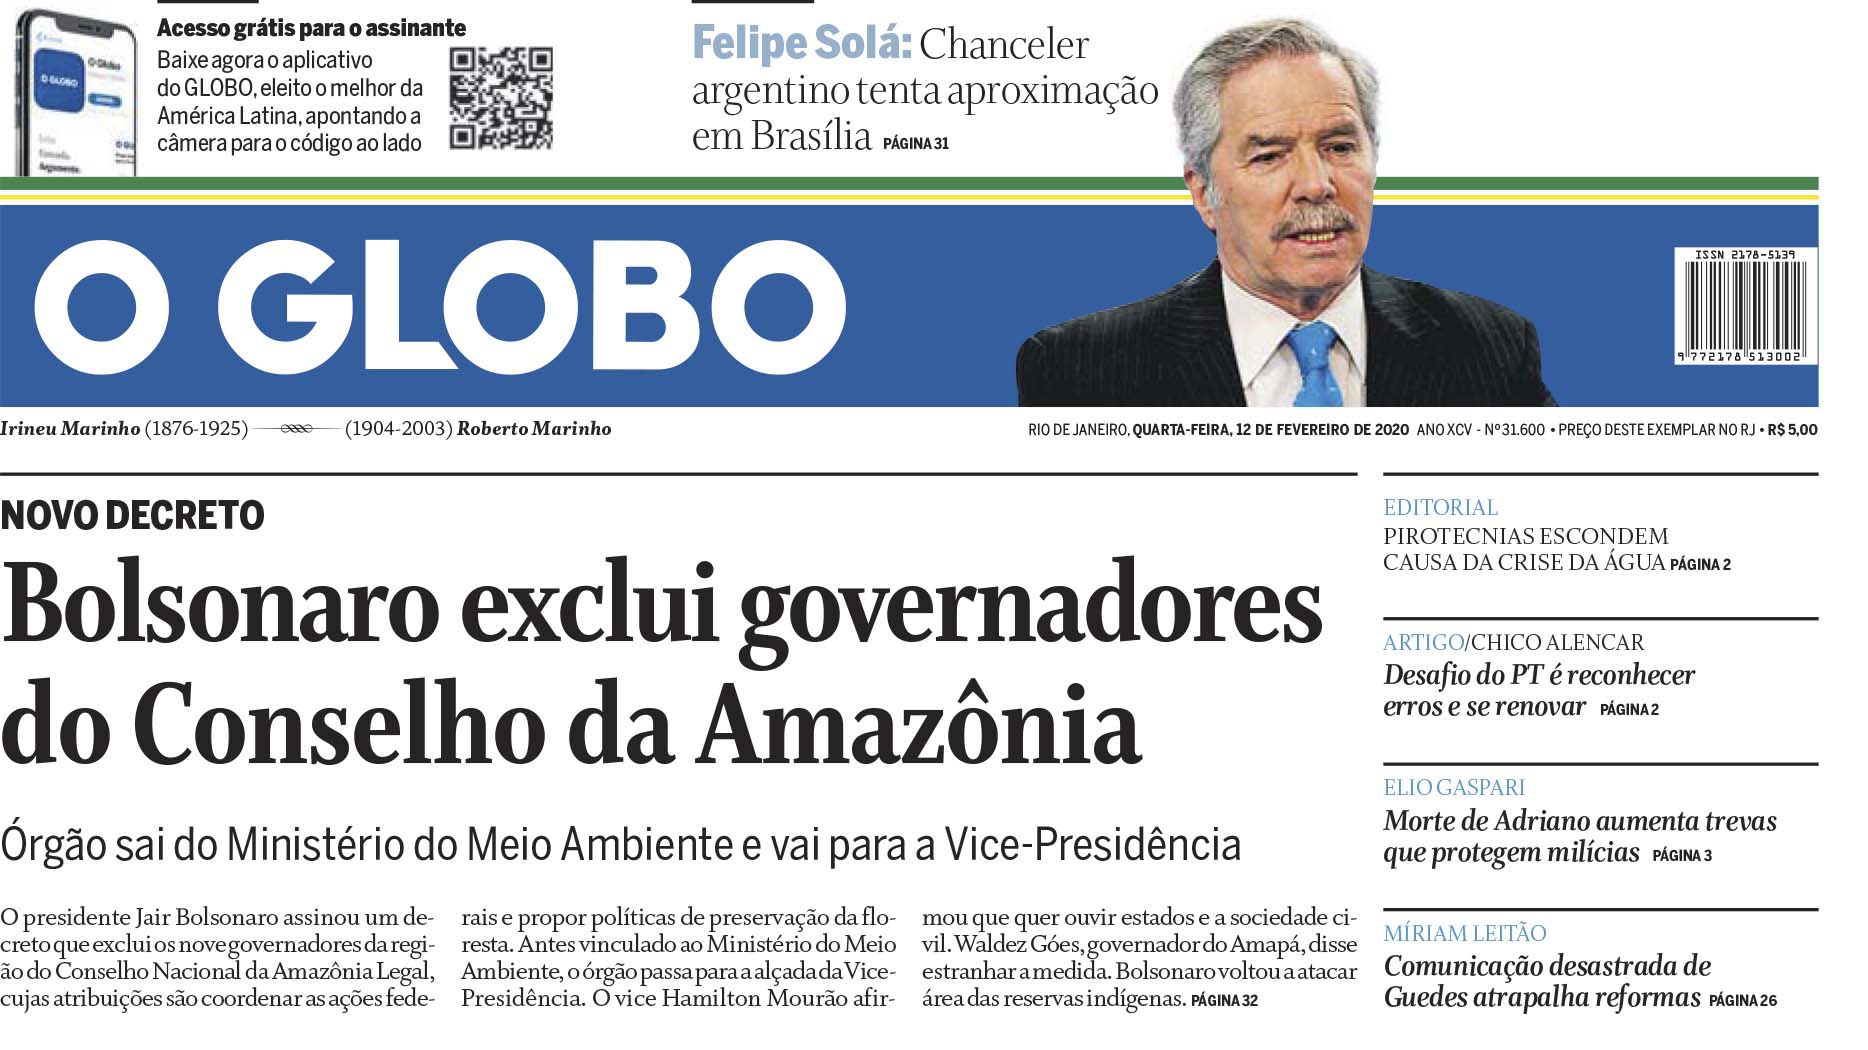 La tapa de la edición de este miércoles de O'Globo